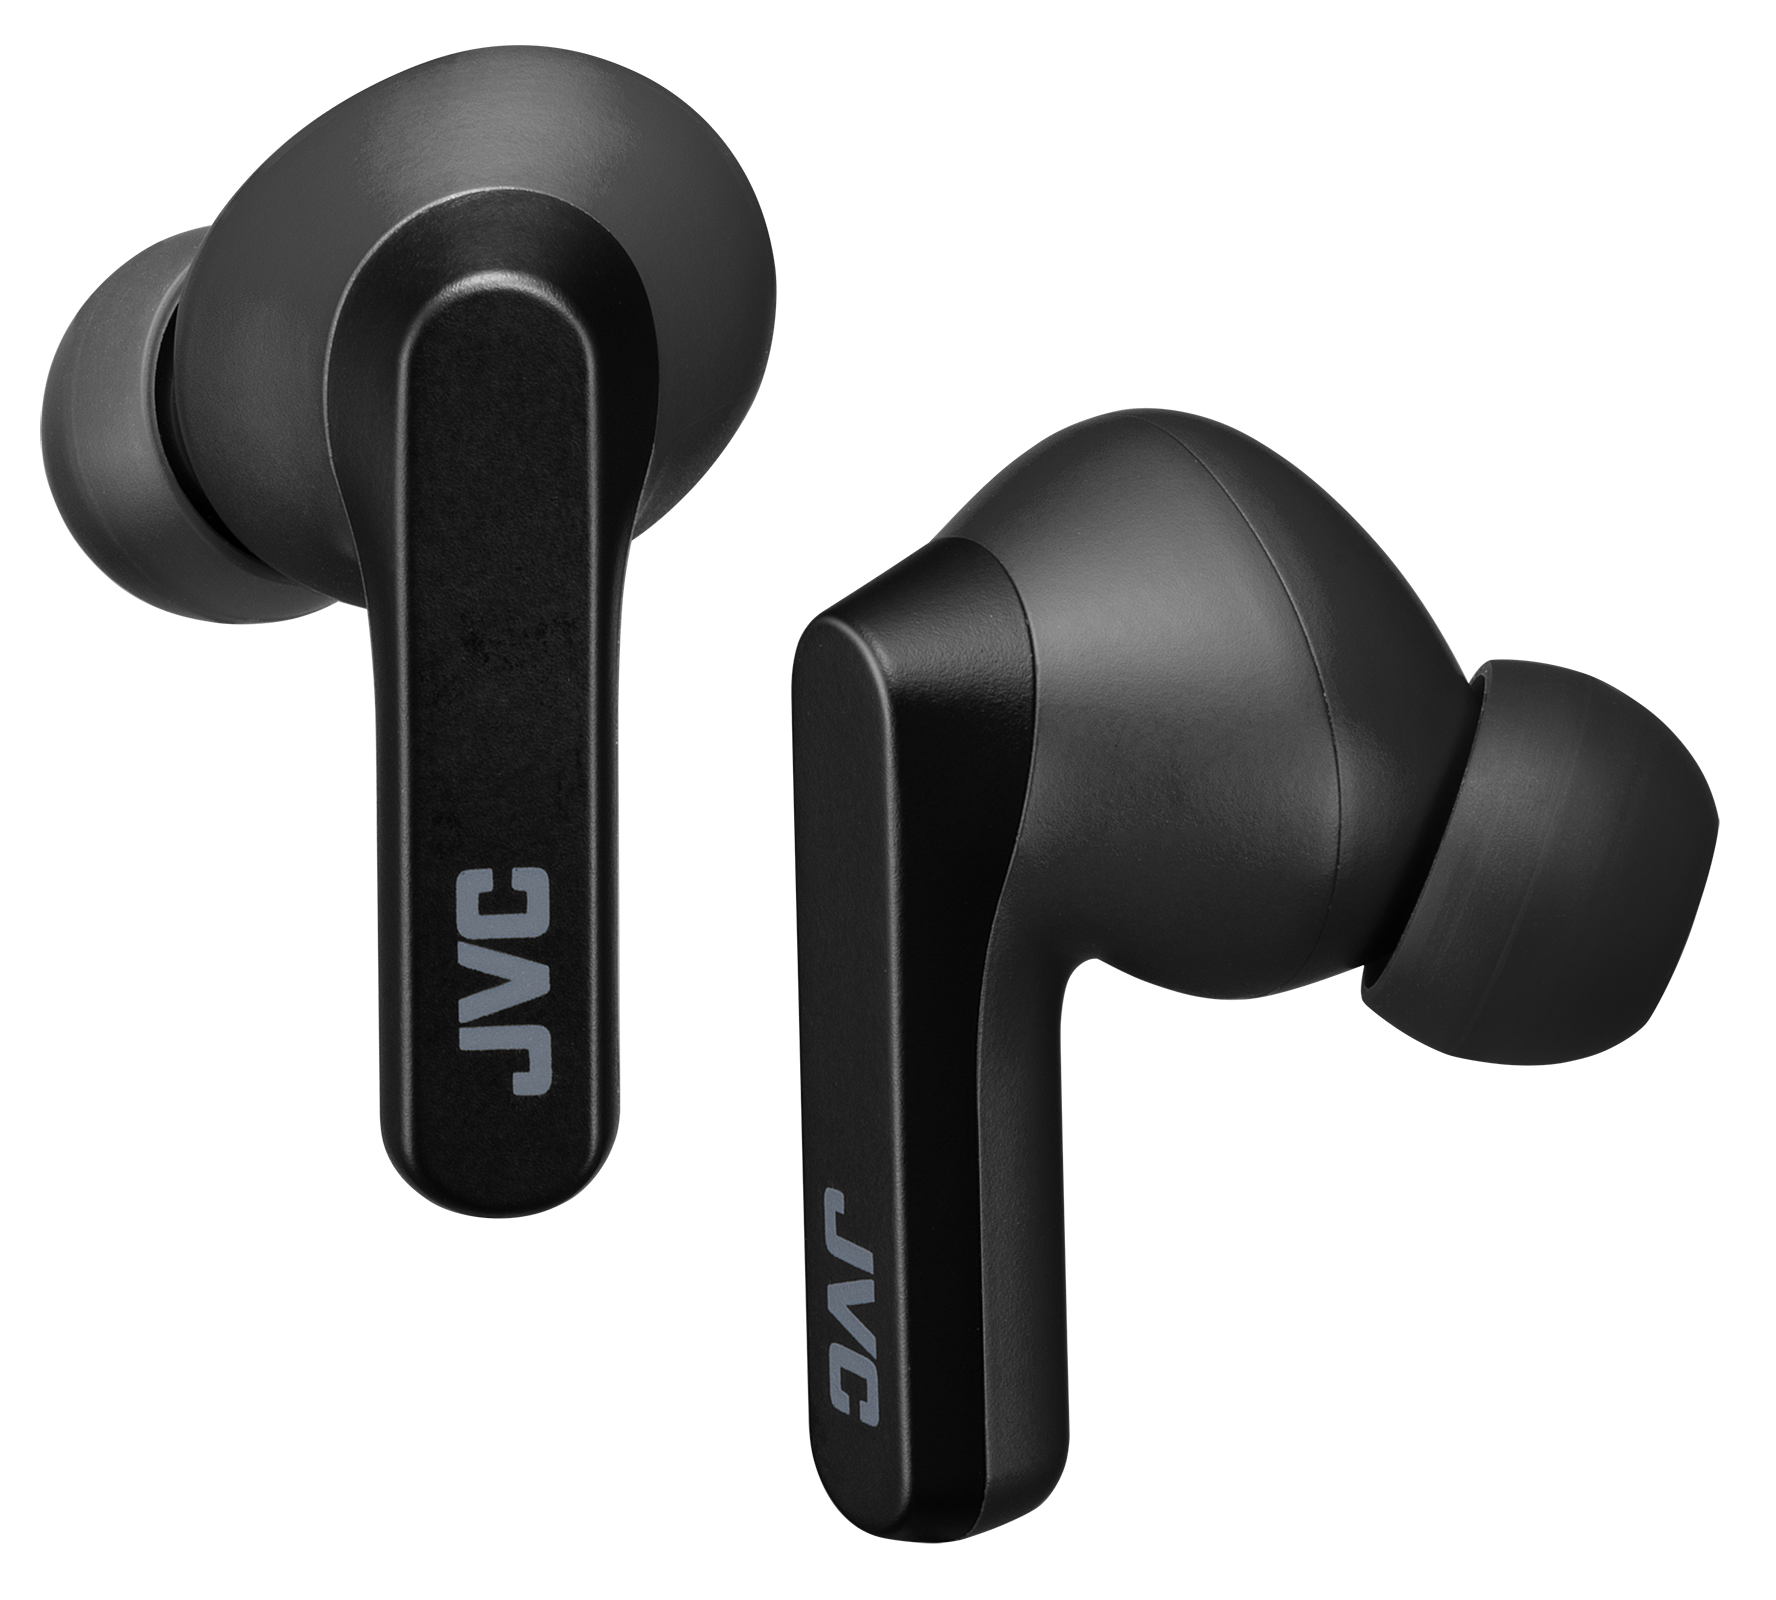 Cancelación de ruido y más de 20 horas de autonomía en estos auriculares  Bluetooth JVC por